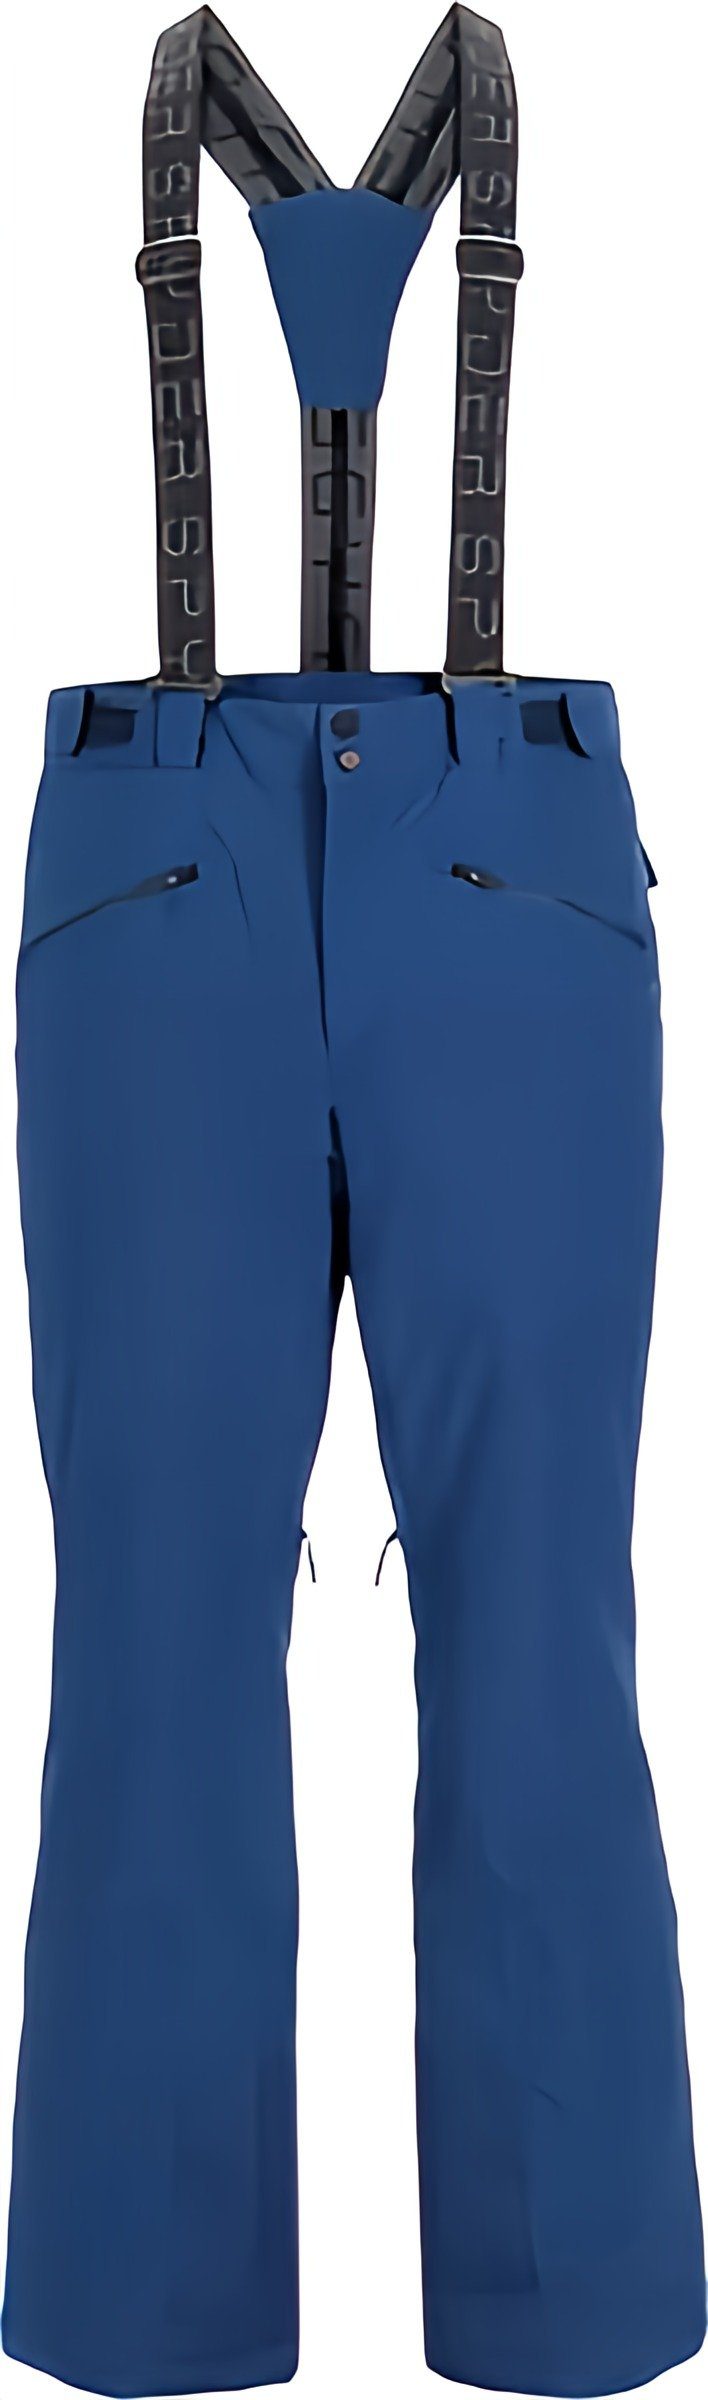 Spyder Skihose Sentinel Tailored Skihose für Herren - Farbe polar blau